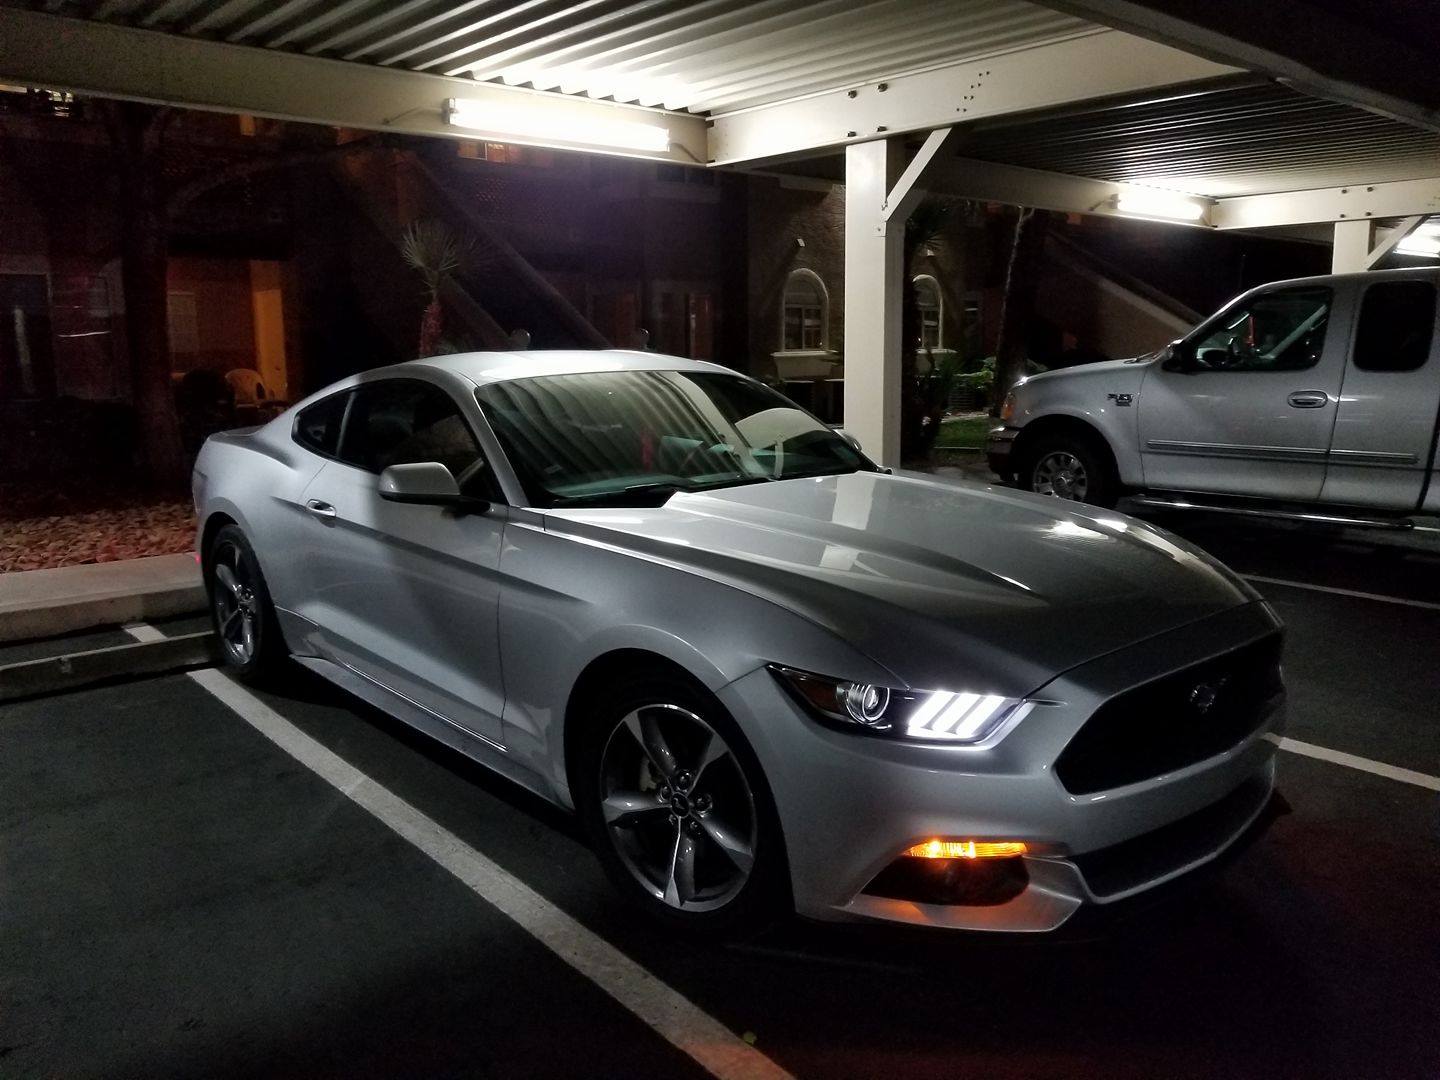 Mustang night3.jpg